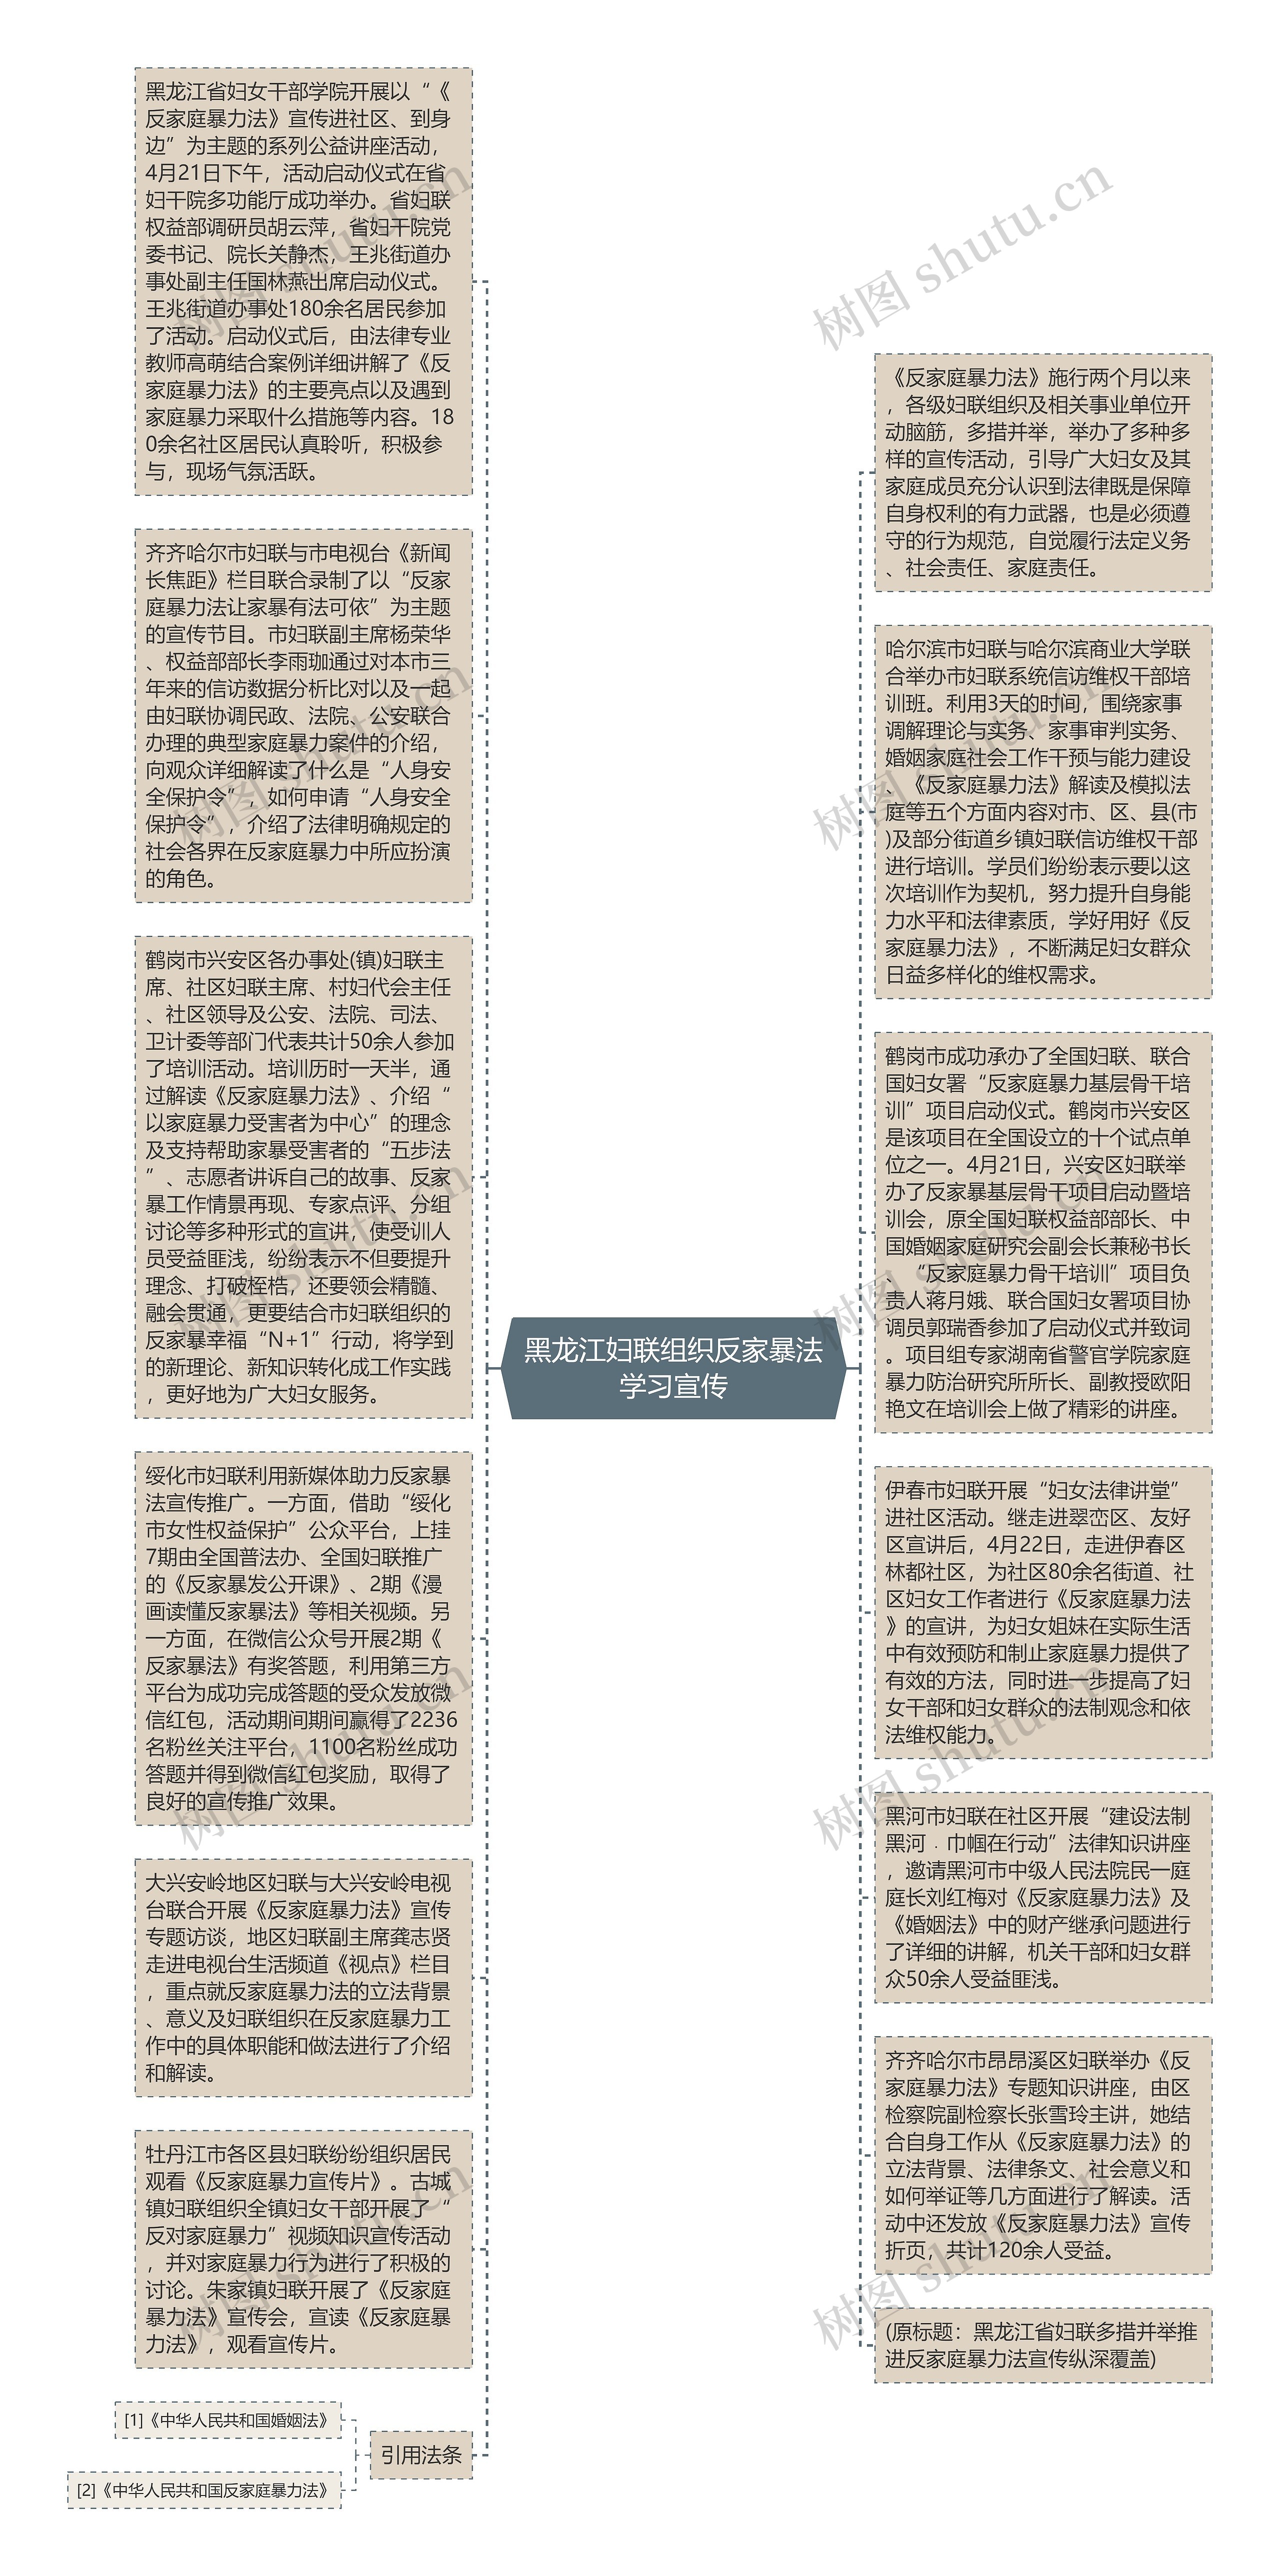 黑龙江妇联组织反家暴法学习宣传思维导图